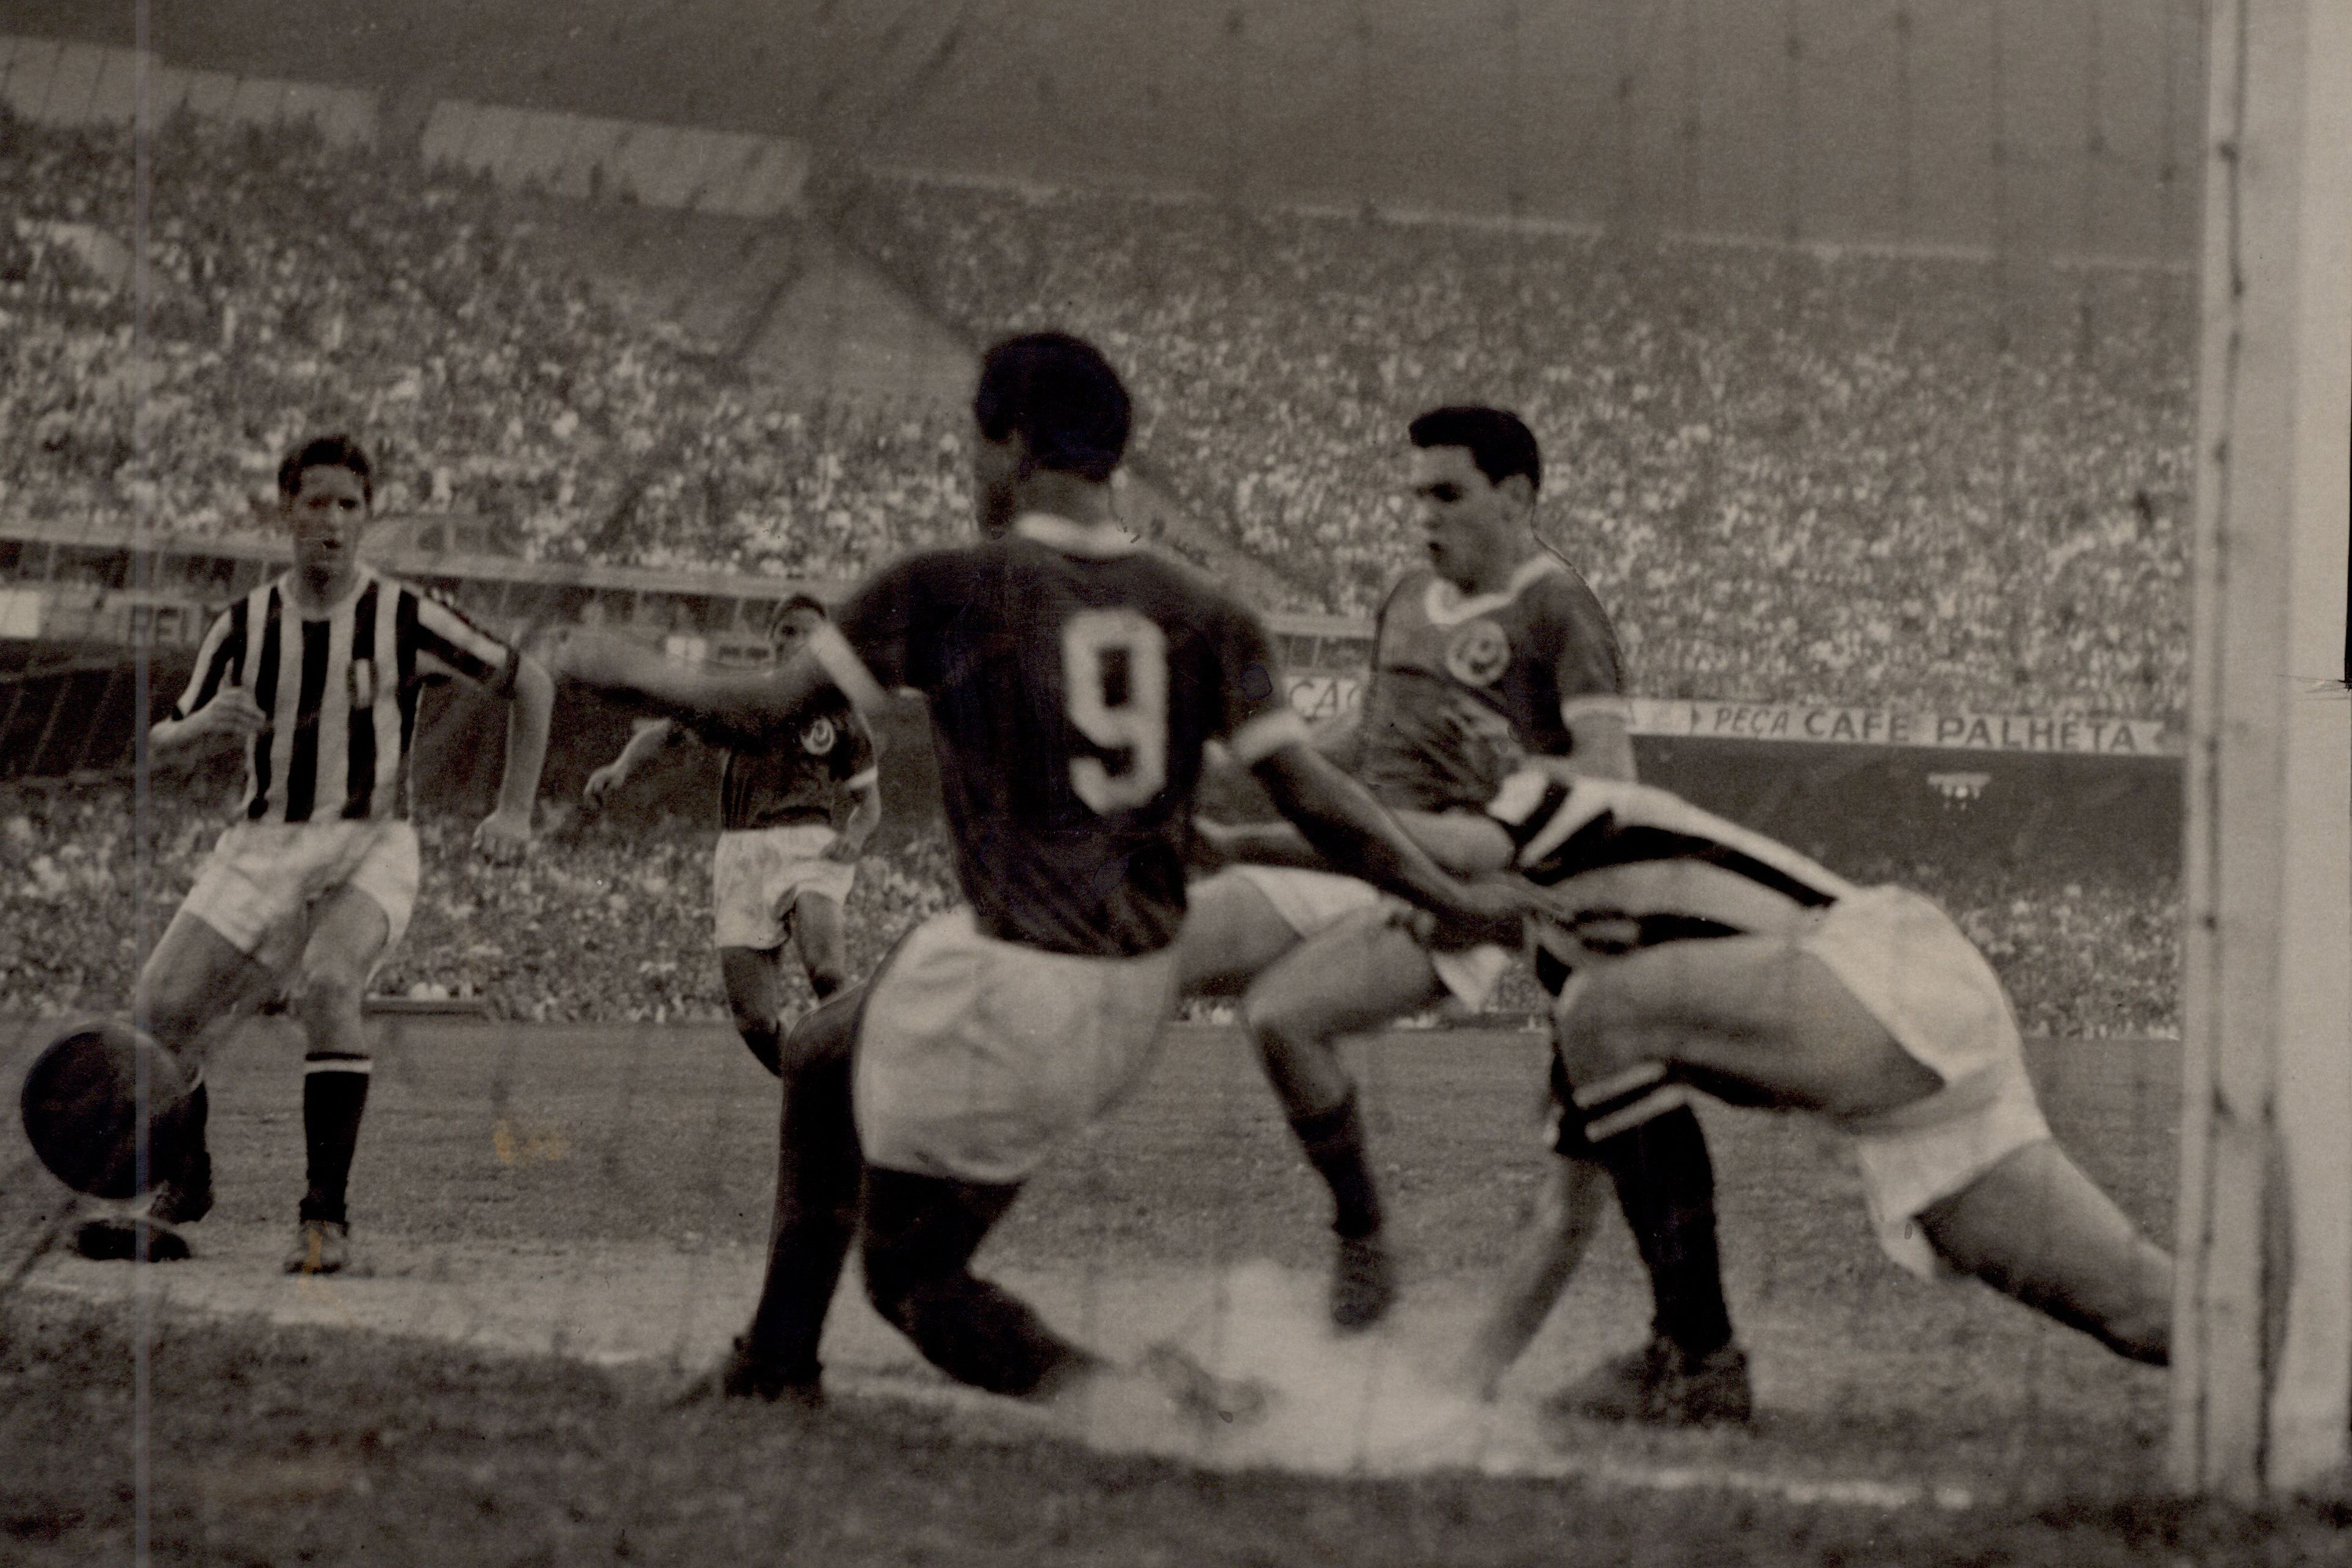 Imagens inéditas do Mundial de 1951 - Palmeiras Campeão do Mundo